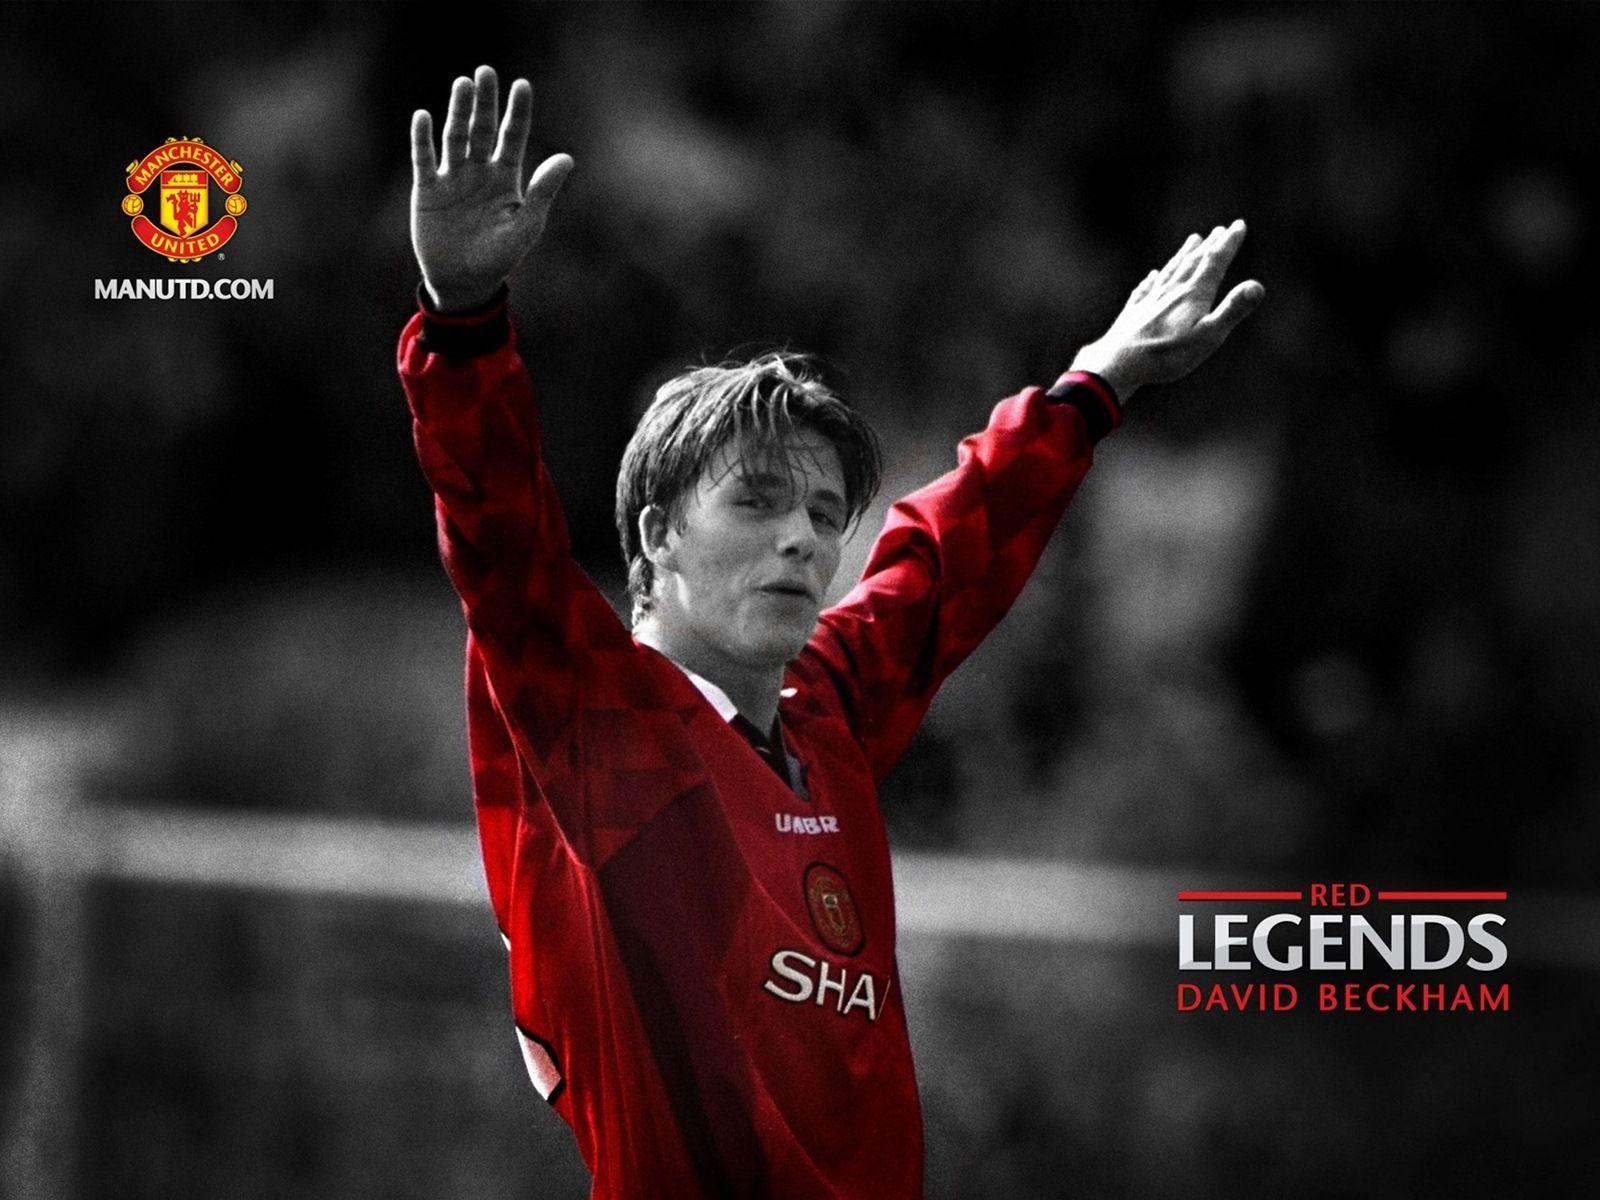 Huyền thoại của đội bóng Manchester United những năm đỉnh cao sự nghiệp (ảnh: Internet)